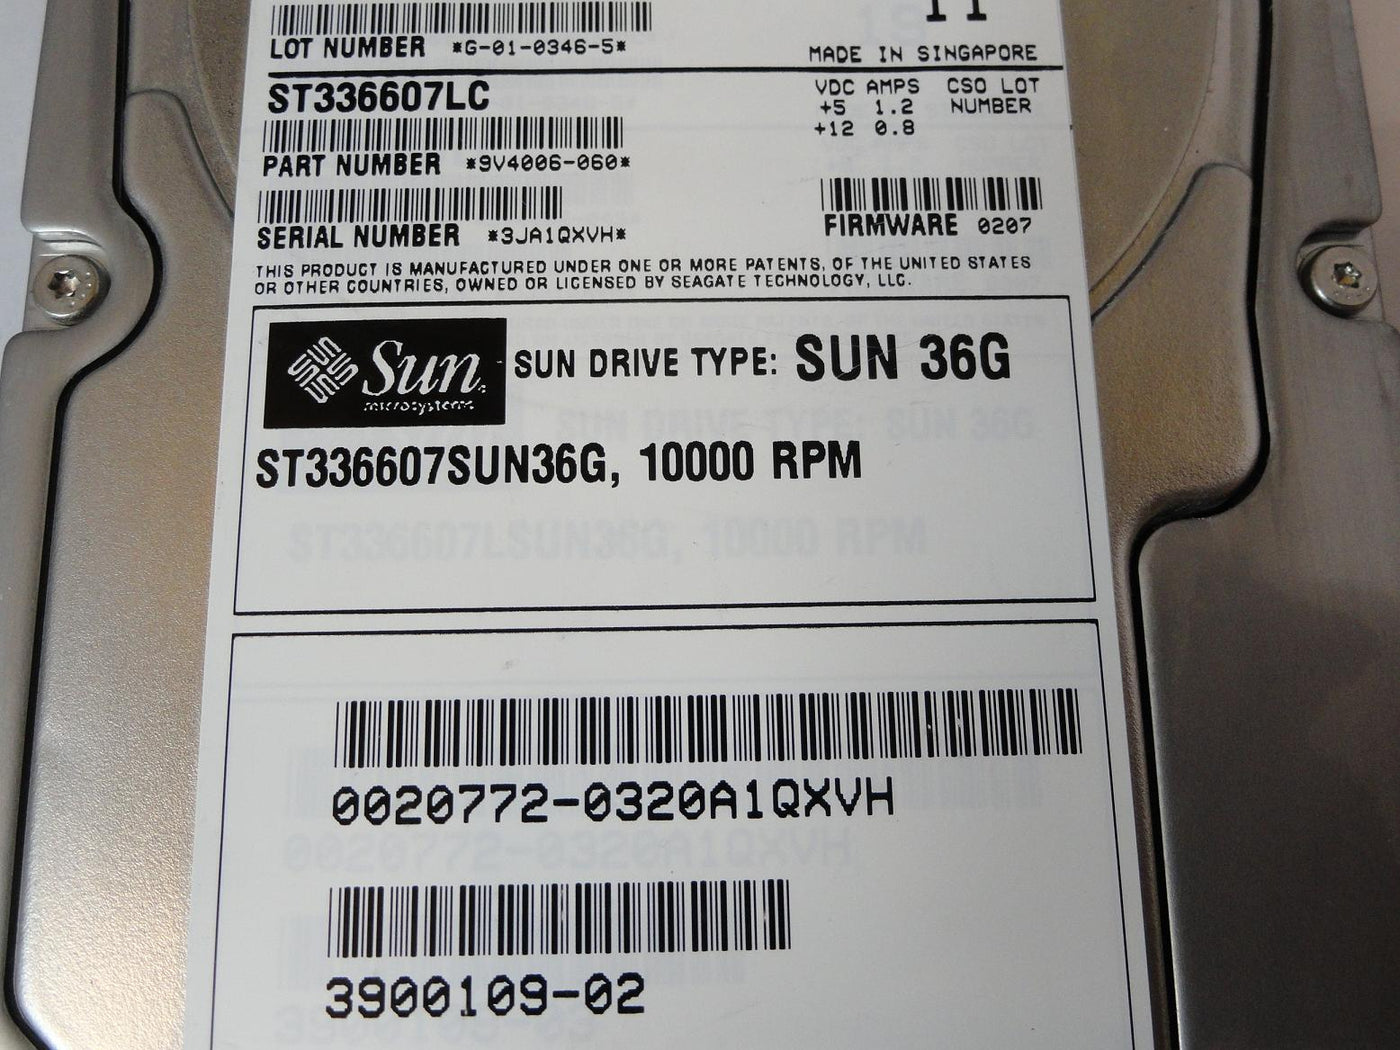 PR24418_9V4006-060_Seagate Sun 36GB SCSI 80 Pin 10Krpm 3.5in HDD - Image3